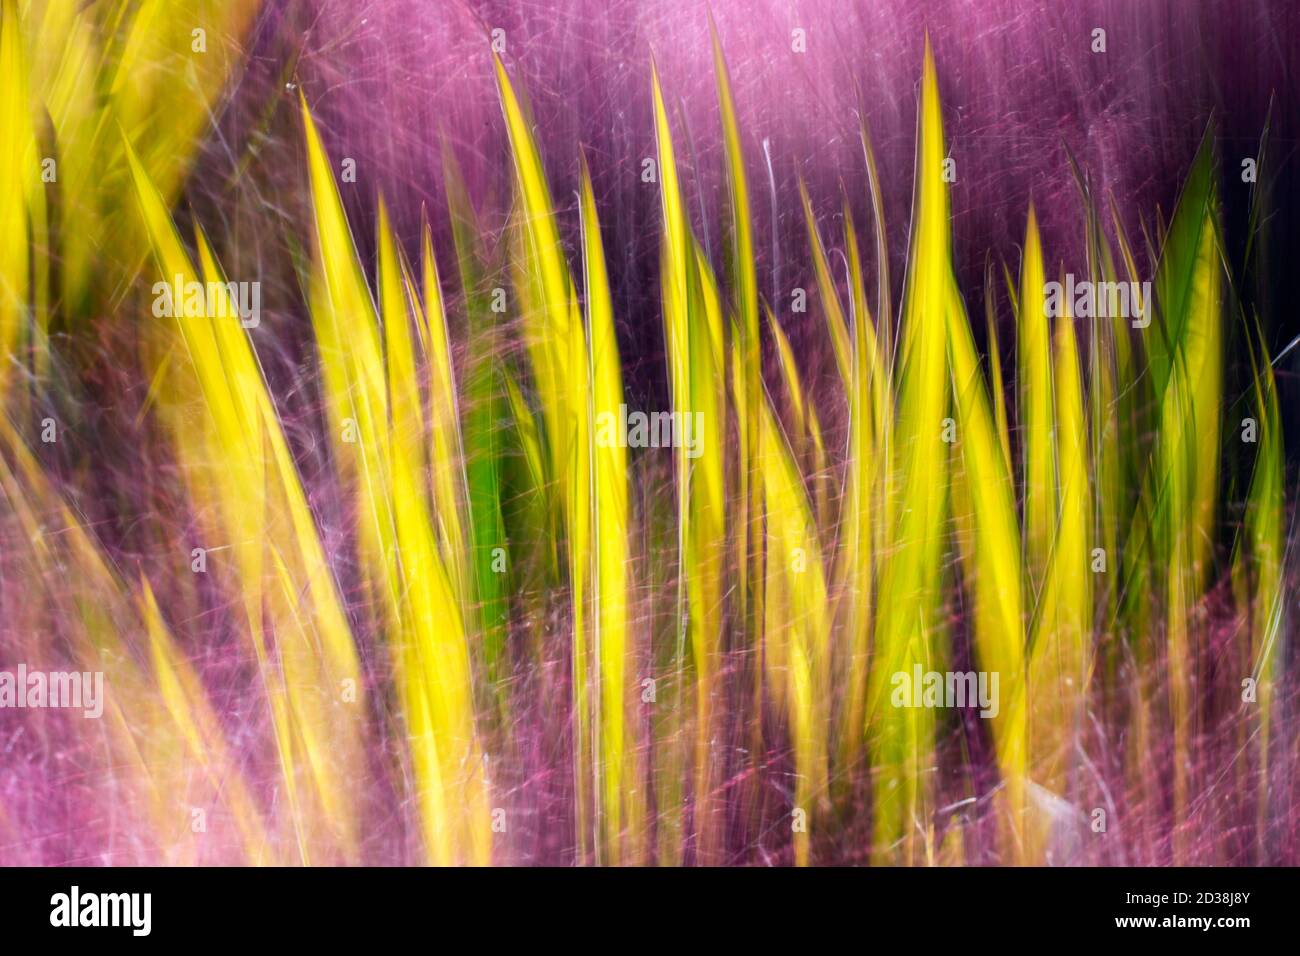 Kreative Unschärfe-Bild von Color Guard Yucca Pflanzen durch bunte Muhly Gras gefangen - Asheville, North Carolina, USA Stockfoto